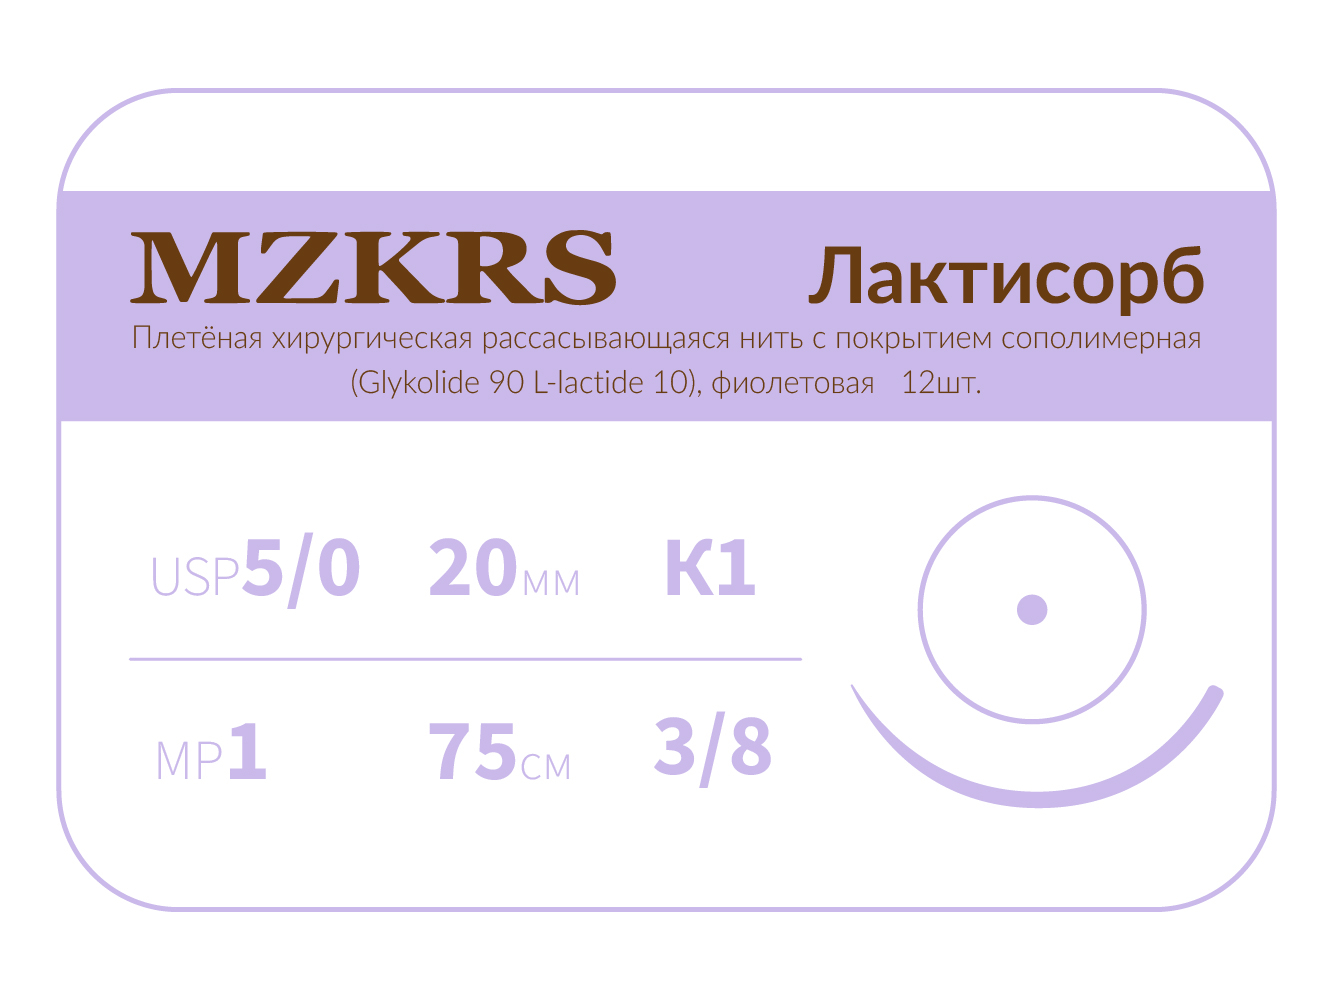 2038К1-Premium-5/0 (1)75 ПГЛ ЛАКТИСОРБ хирургическая нить сополимерная, MZKRS (Россия)